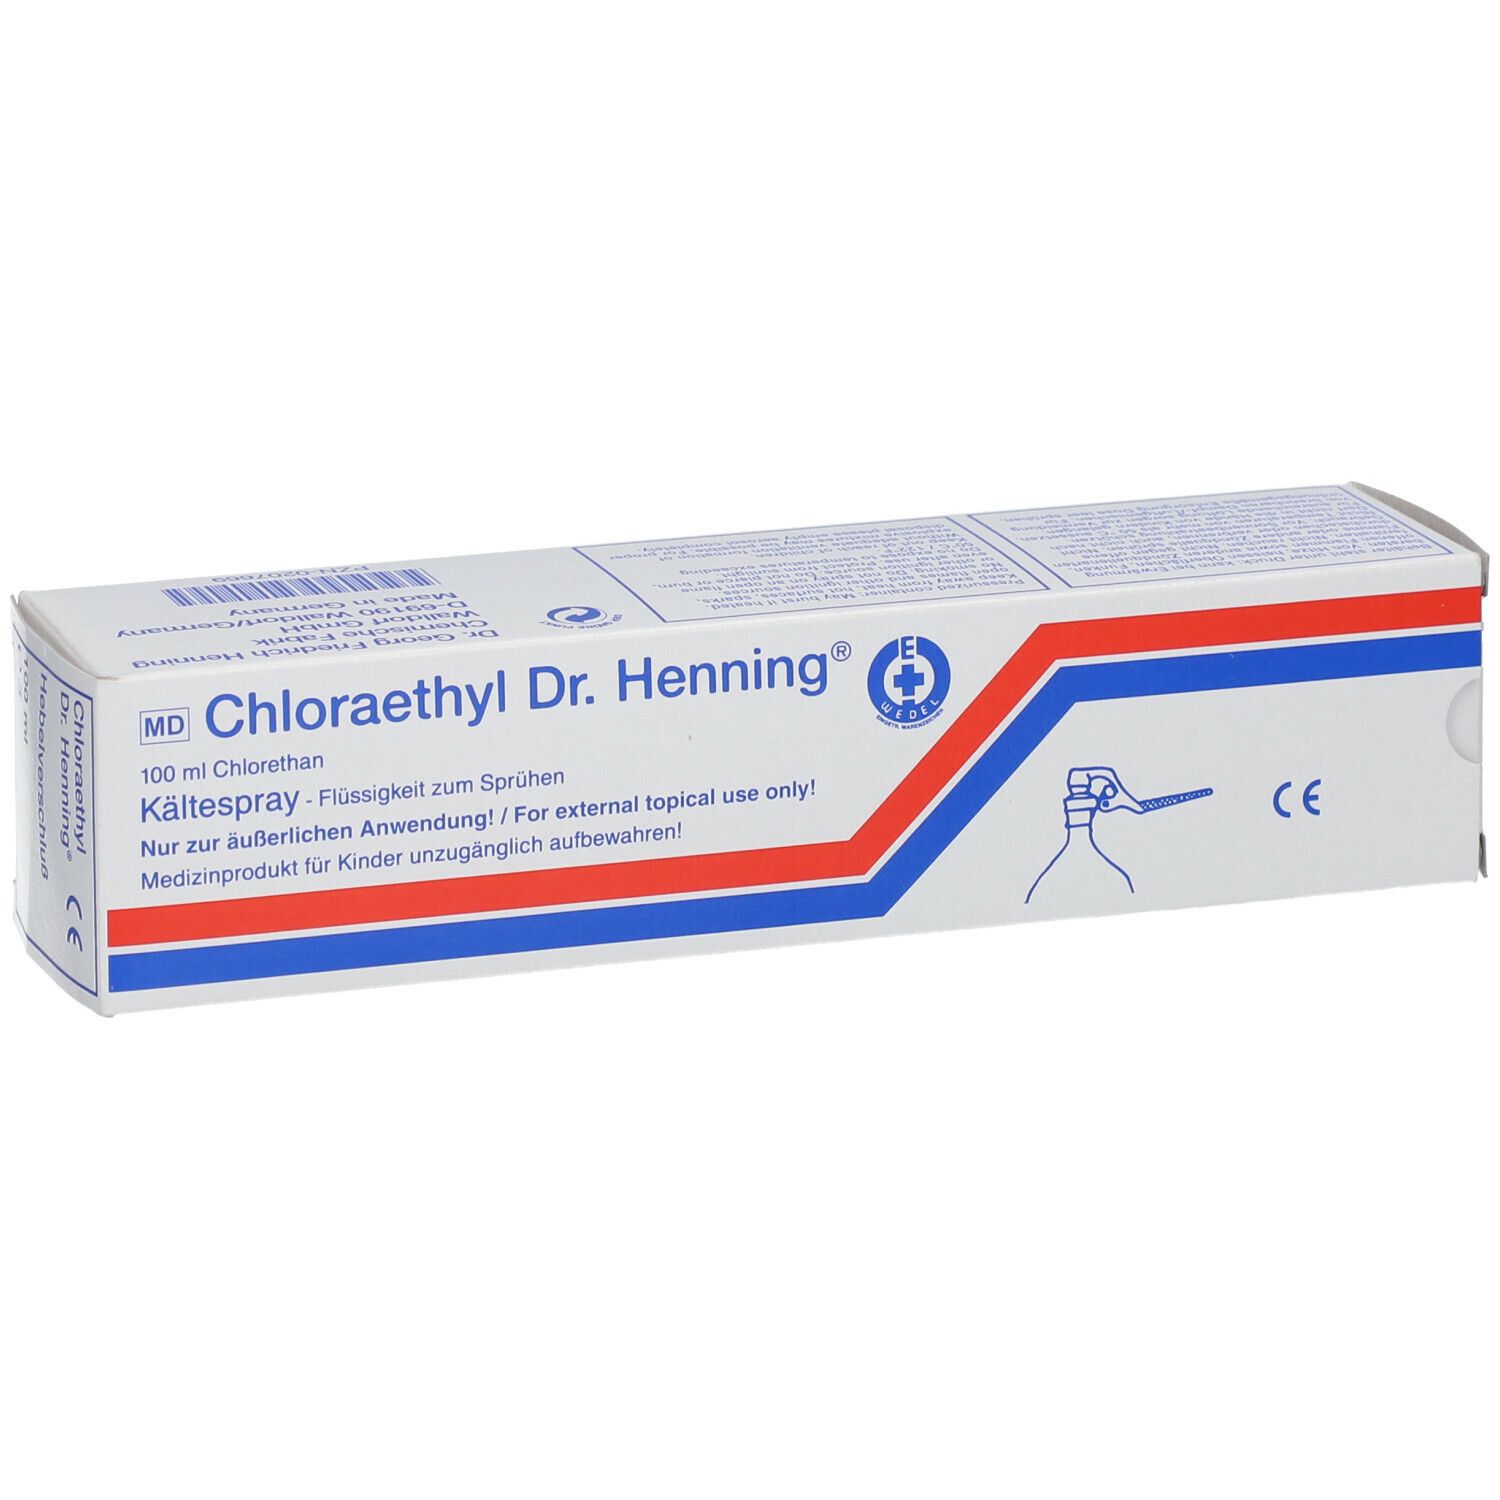 Chloraethyl Dr. Henning®